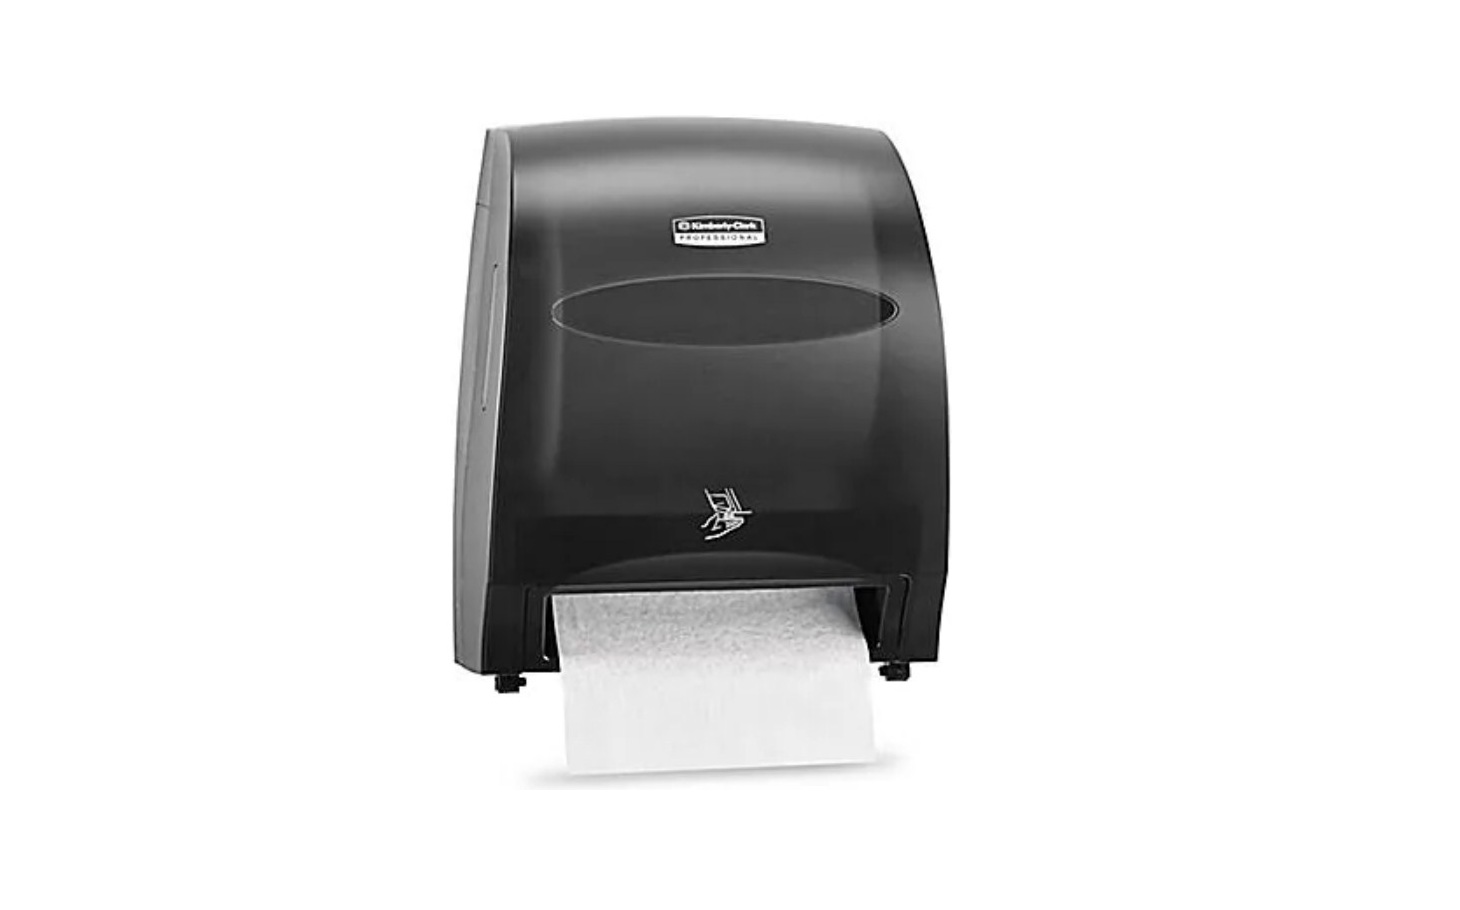 ULINE H-4701 Slimfold Towel Dispenser Instruction Manual